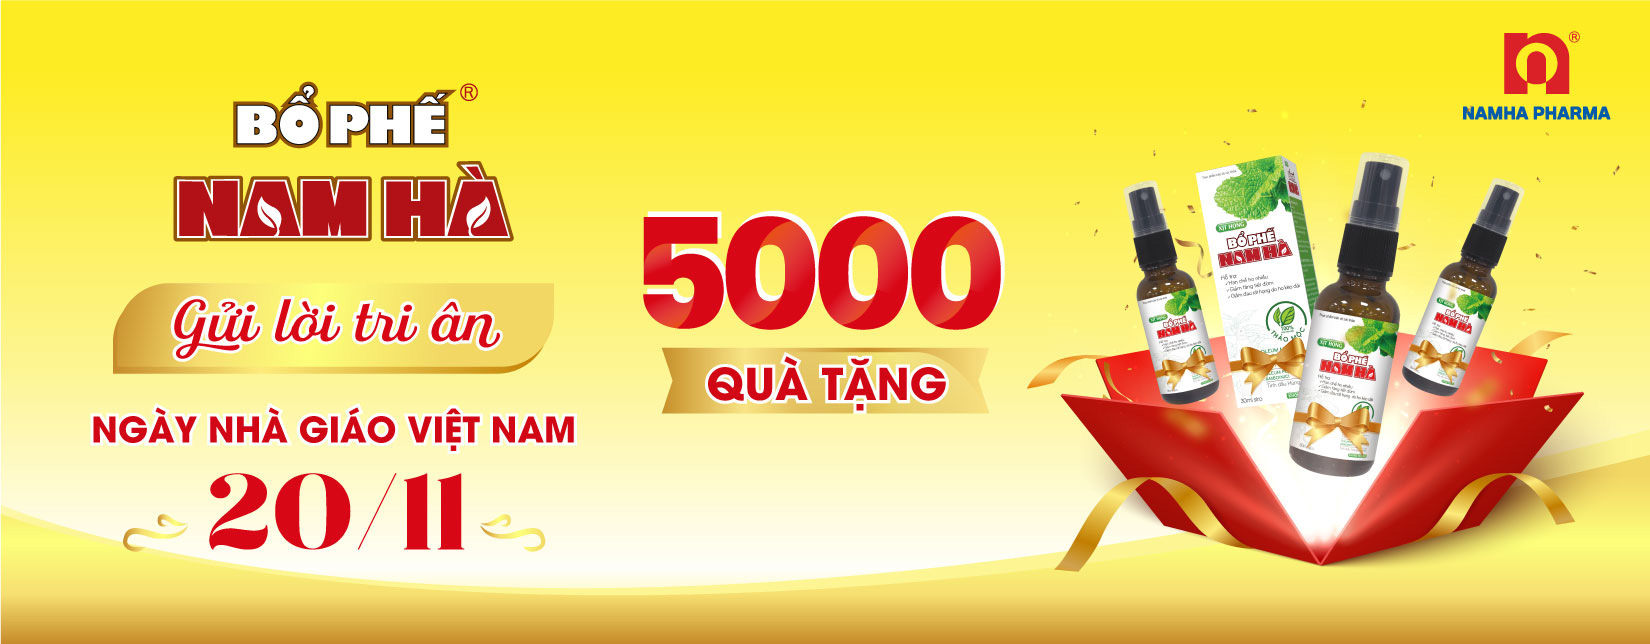 Nam Ha Pharmacy Gives 5000 Gifts for Teachers